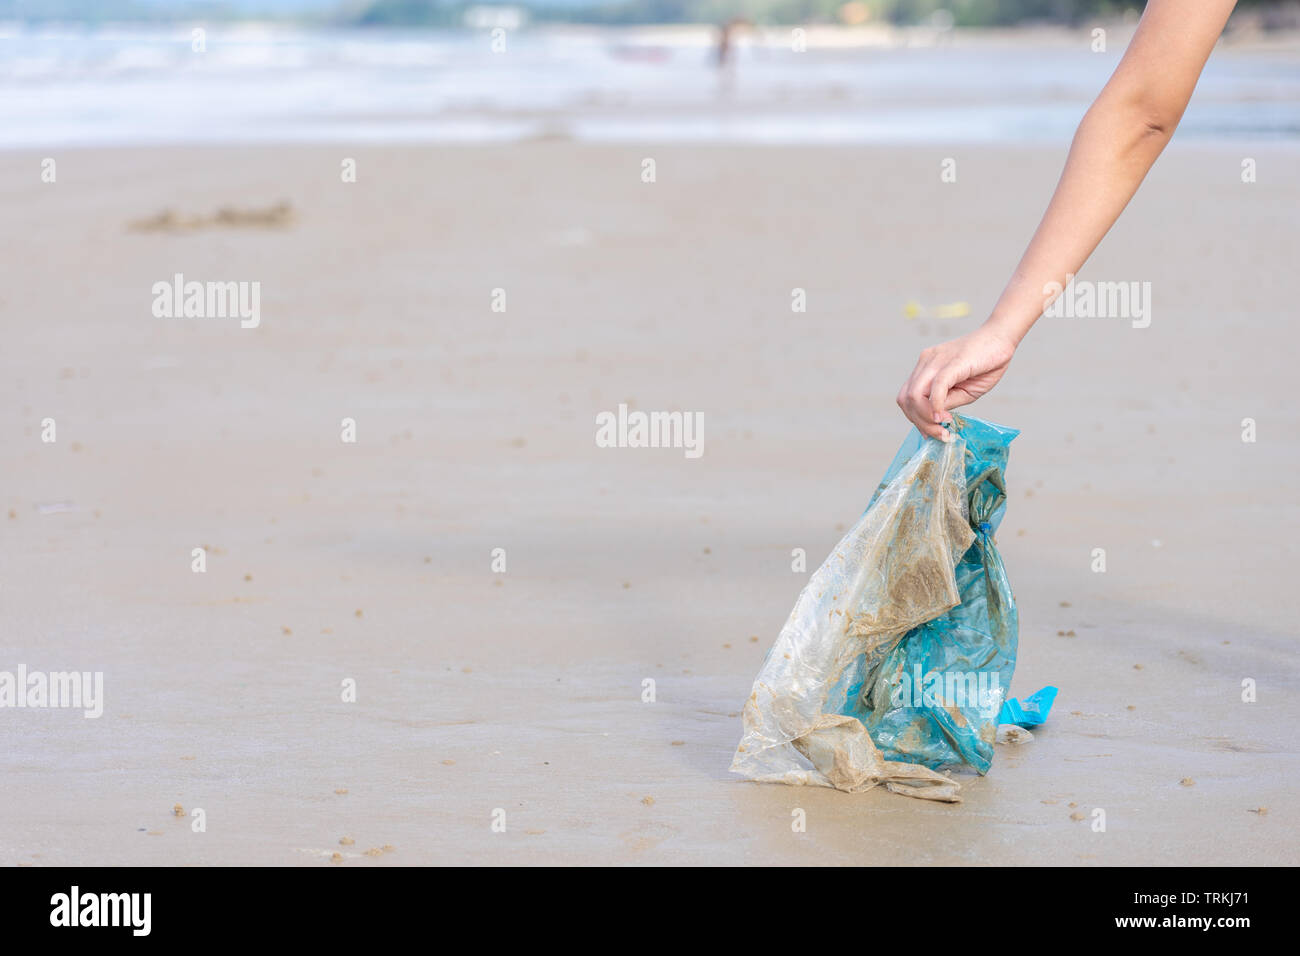 Woman's Hand herauf verwendet Plastikbeutel auf Sand Strand, Reinigung Seaside Beach. Umweltverschmutzung, ökologische Problem und Meeresverschmutzung con Stockfoto